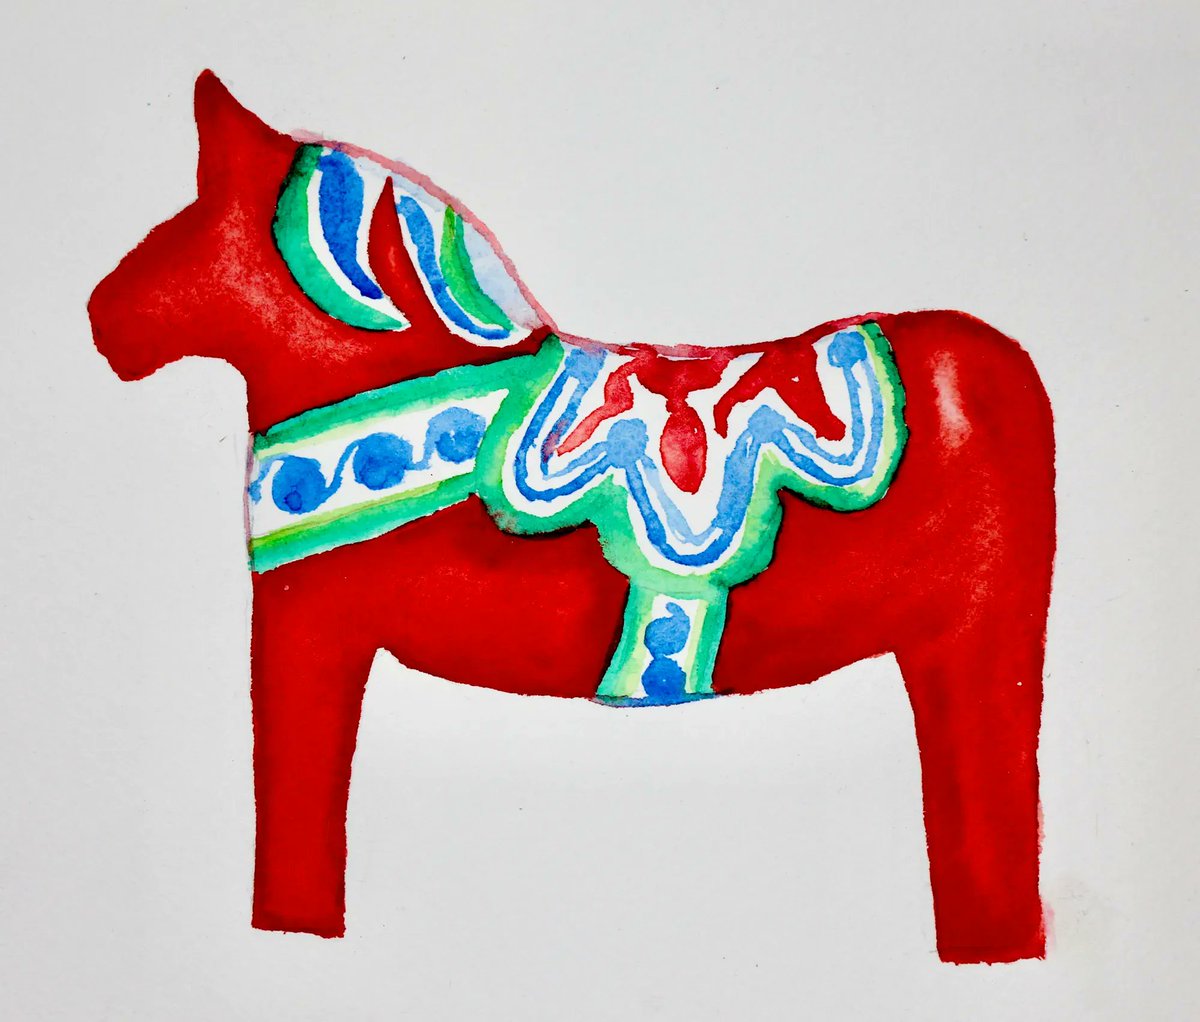 Dala Häst 2 - 10”x8”

#dalahäst #watercolor #dalahorsewatercolor #dalahorse